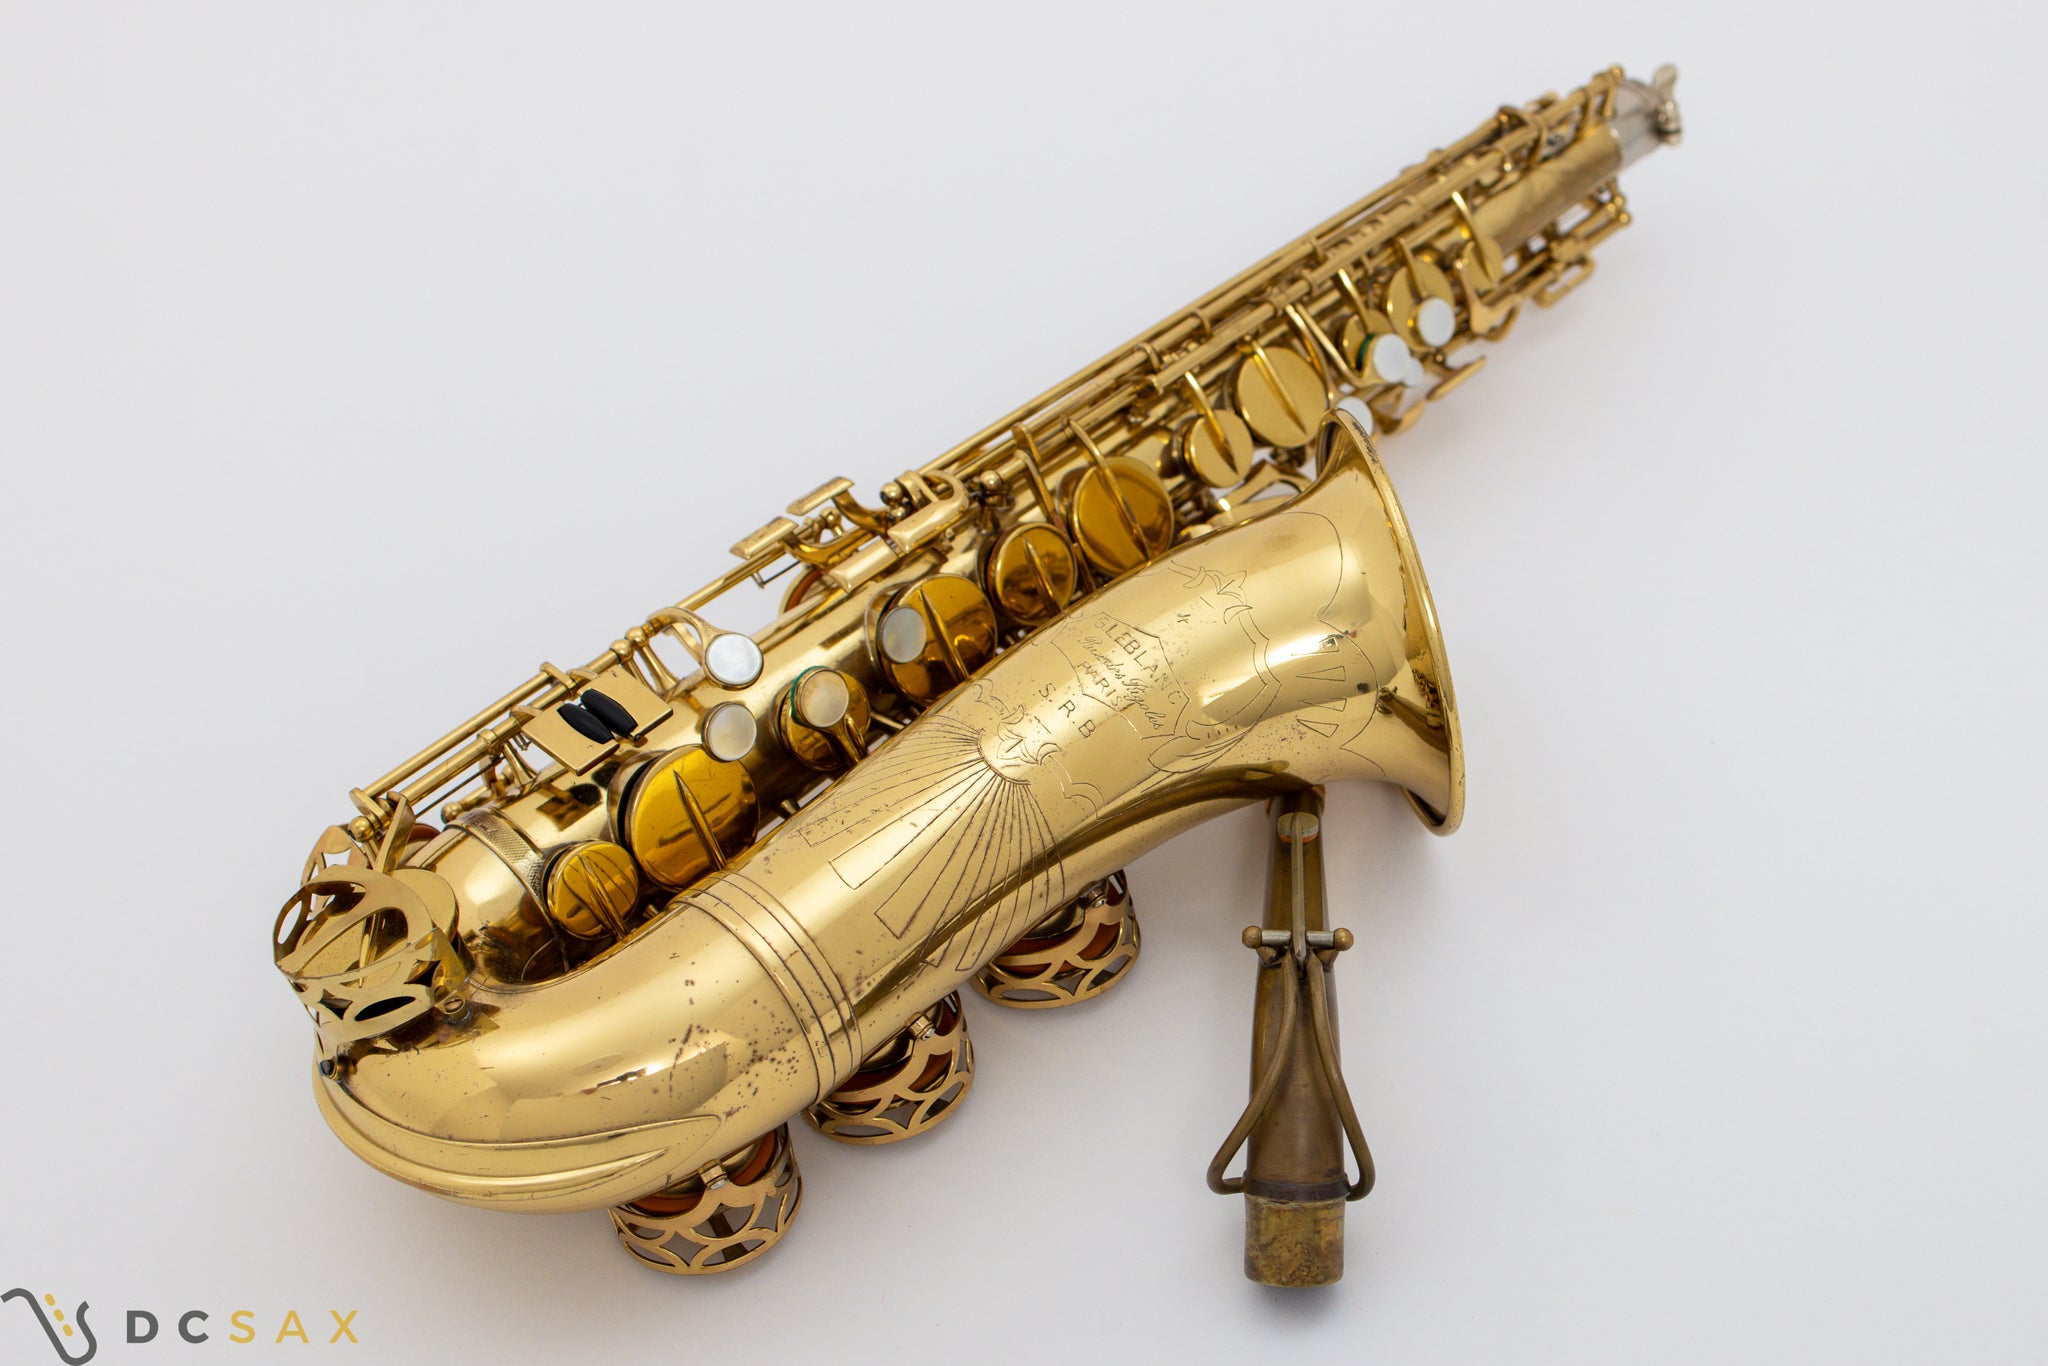 Leblanc SRB Alto Saxophone, S/N 4